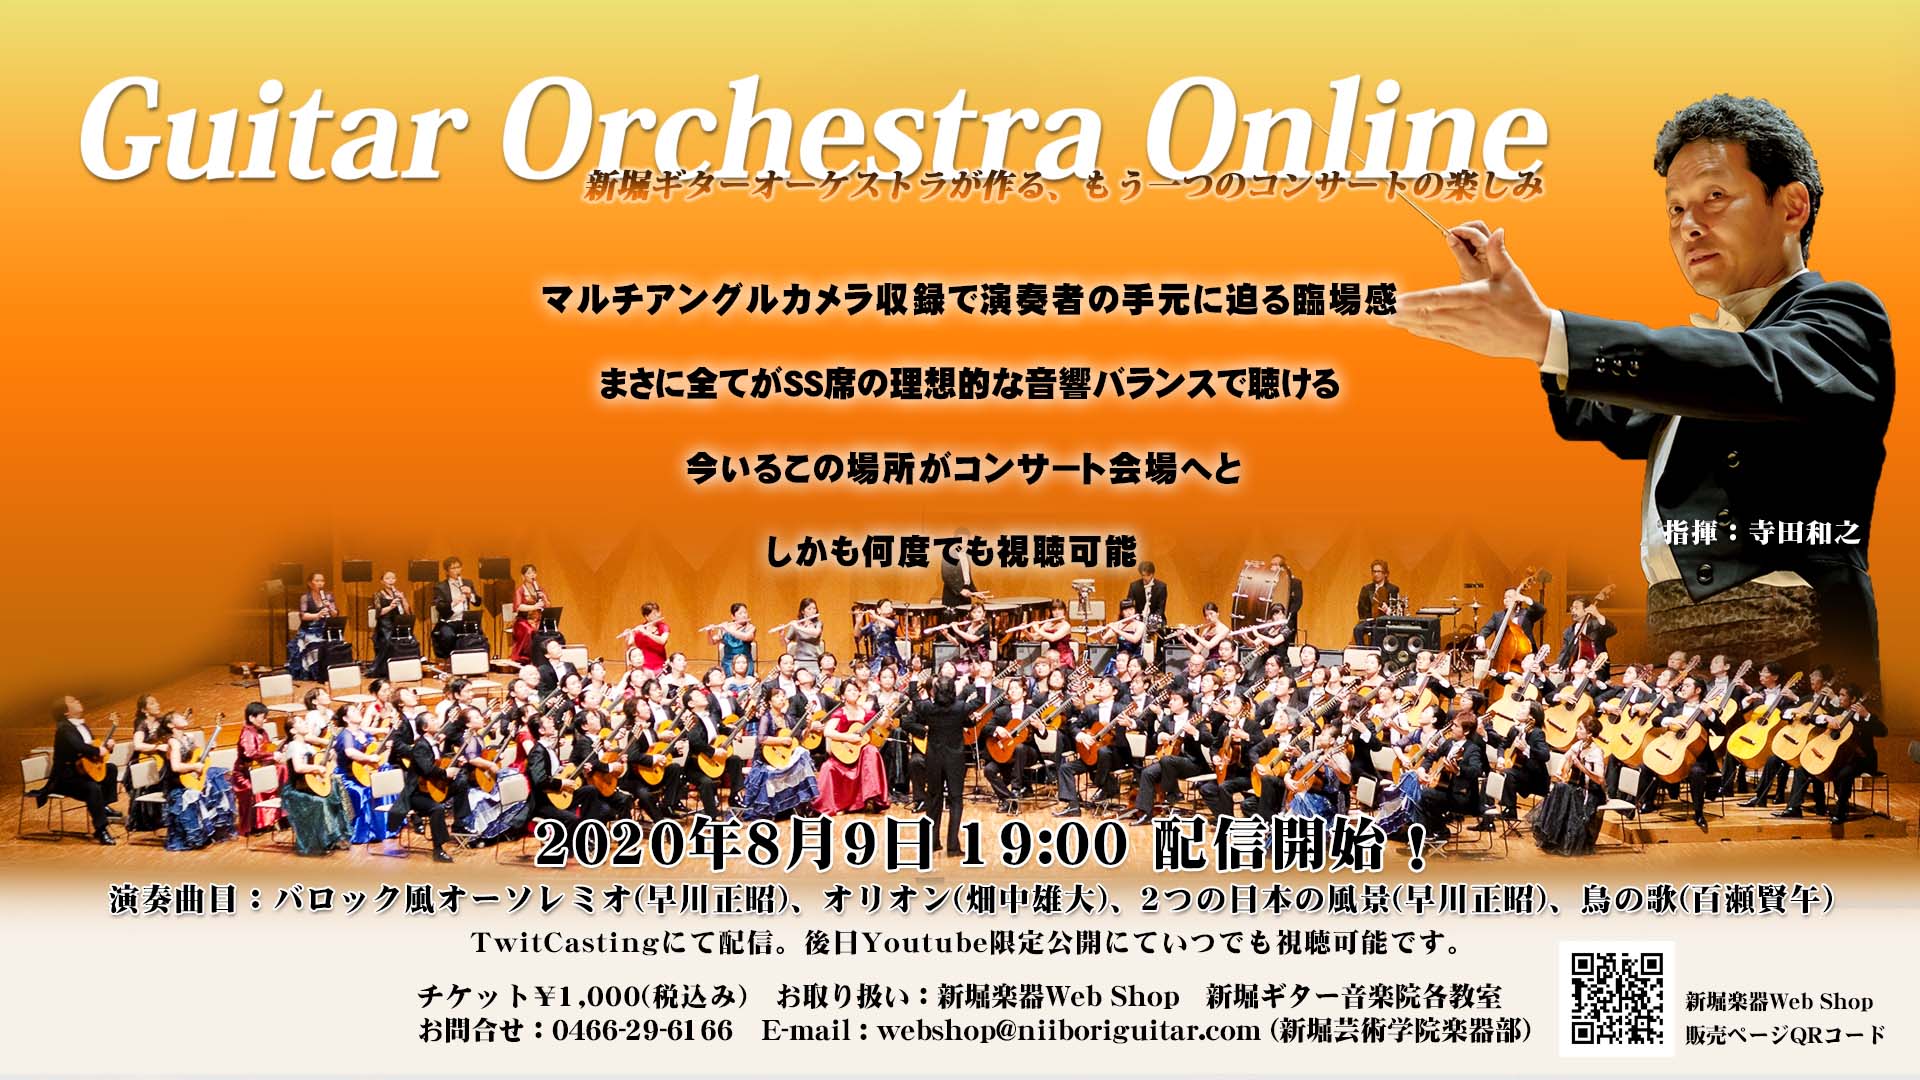 次回予告 2020年10月4日「Guitar Orchestra Online」コンサート